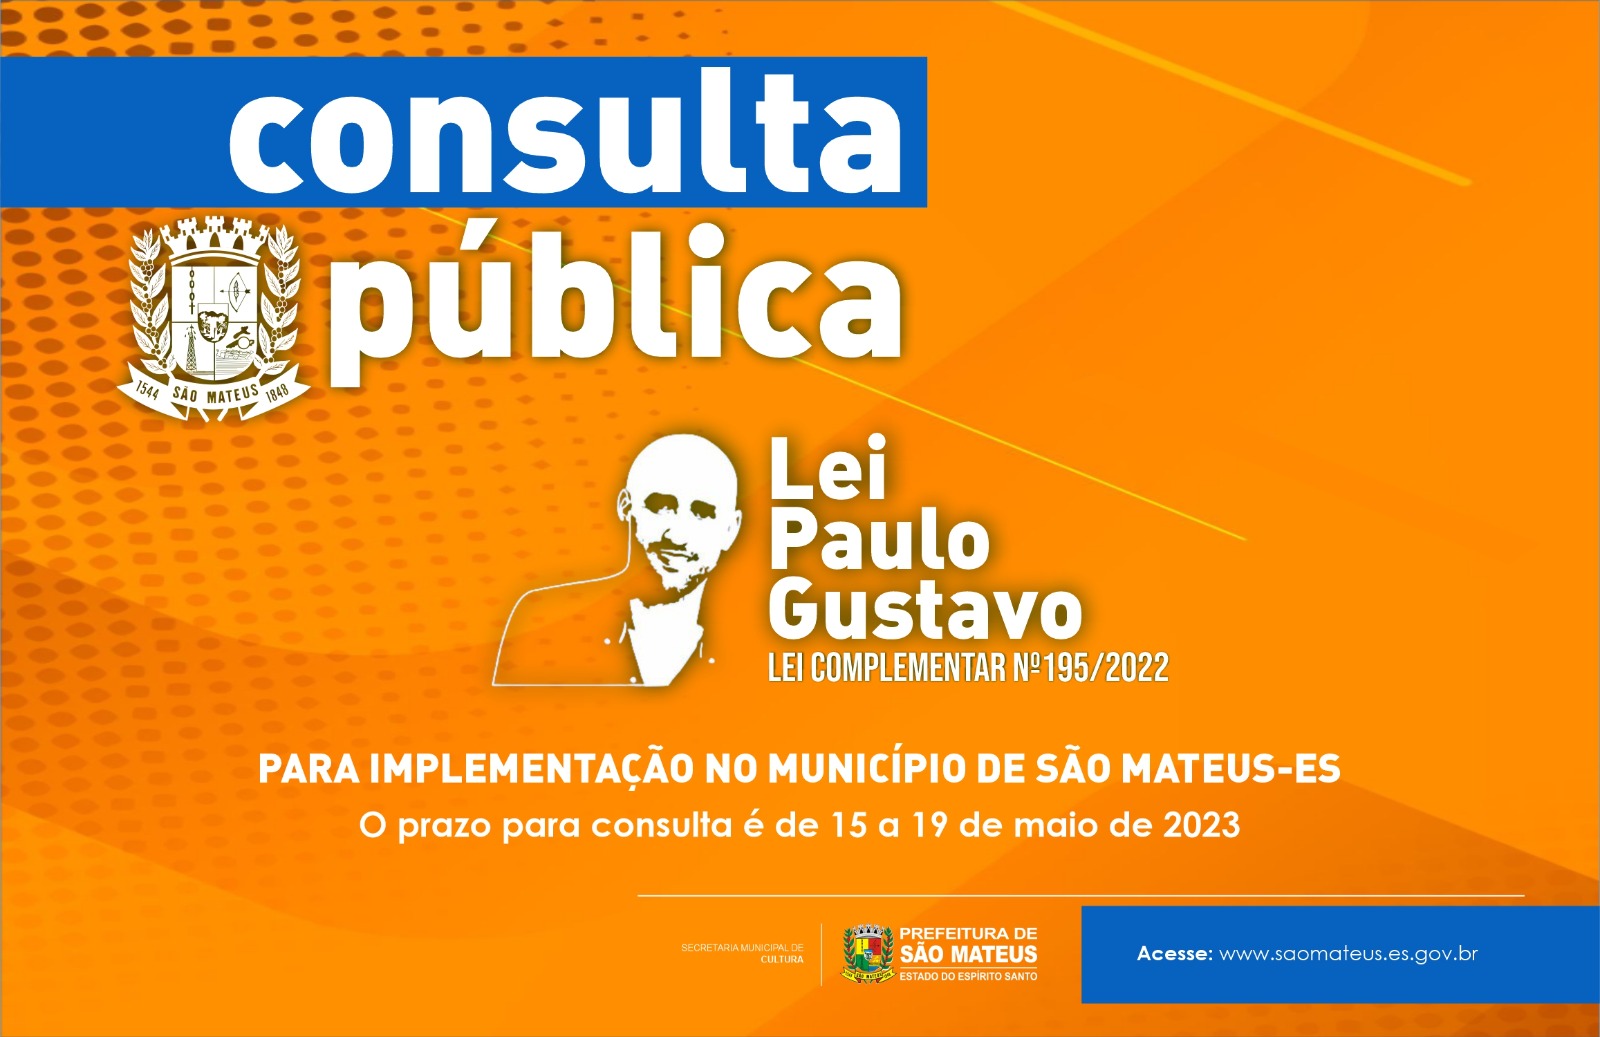 CONSULTA PÚBLICA LEI PAULO GUSTAVO ABERTA PARA IMPLEMENTAÇÃO DA LEI COMPLEMENTAR Nº 195/2022 NO MUNICÍPIO DE SÃO MATEUS-ES